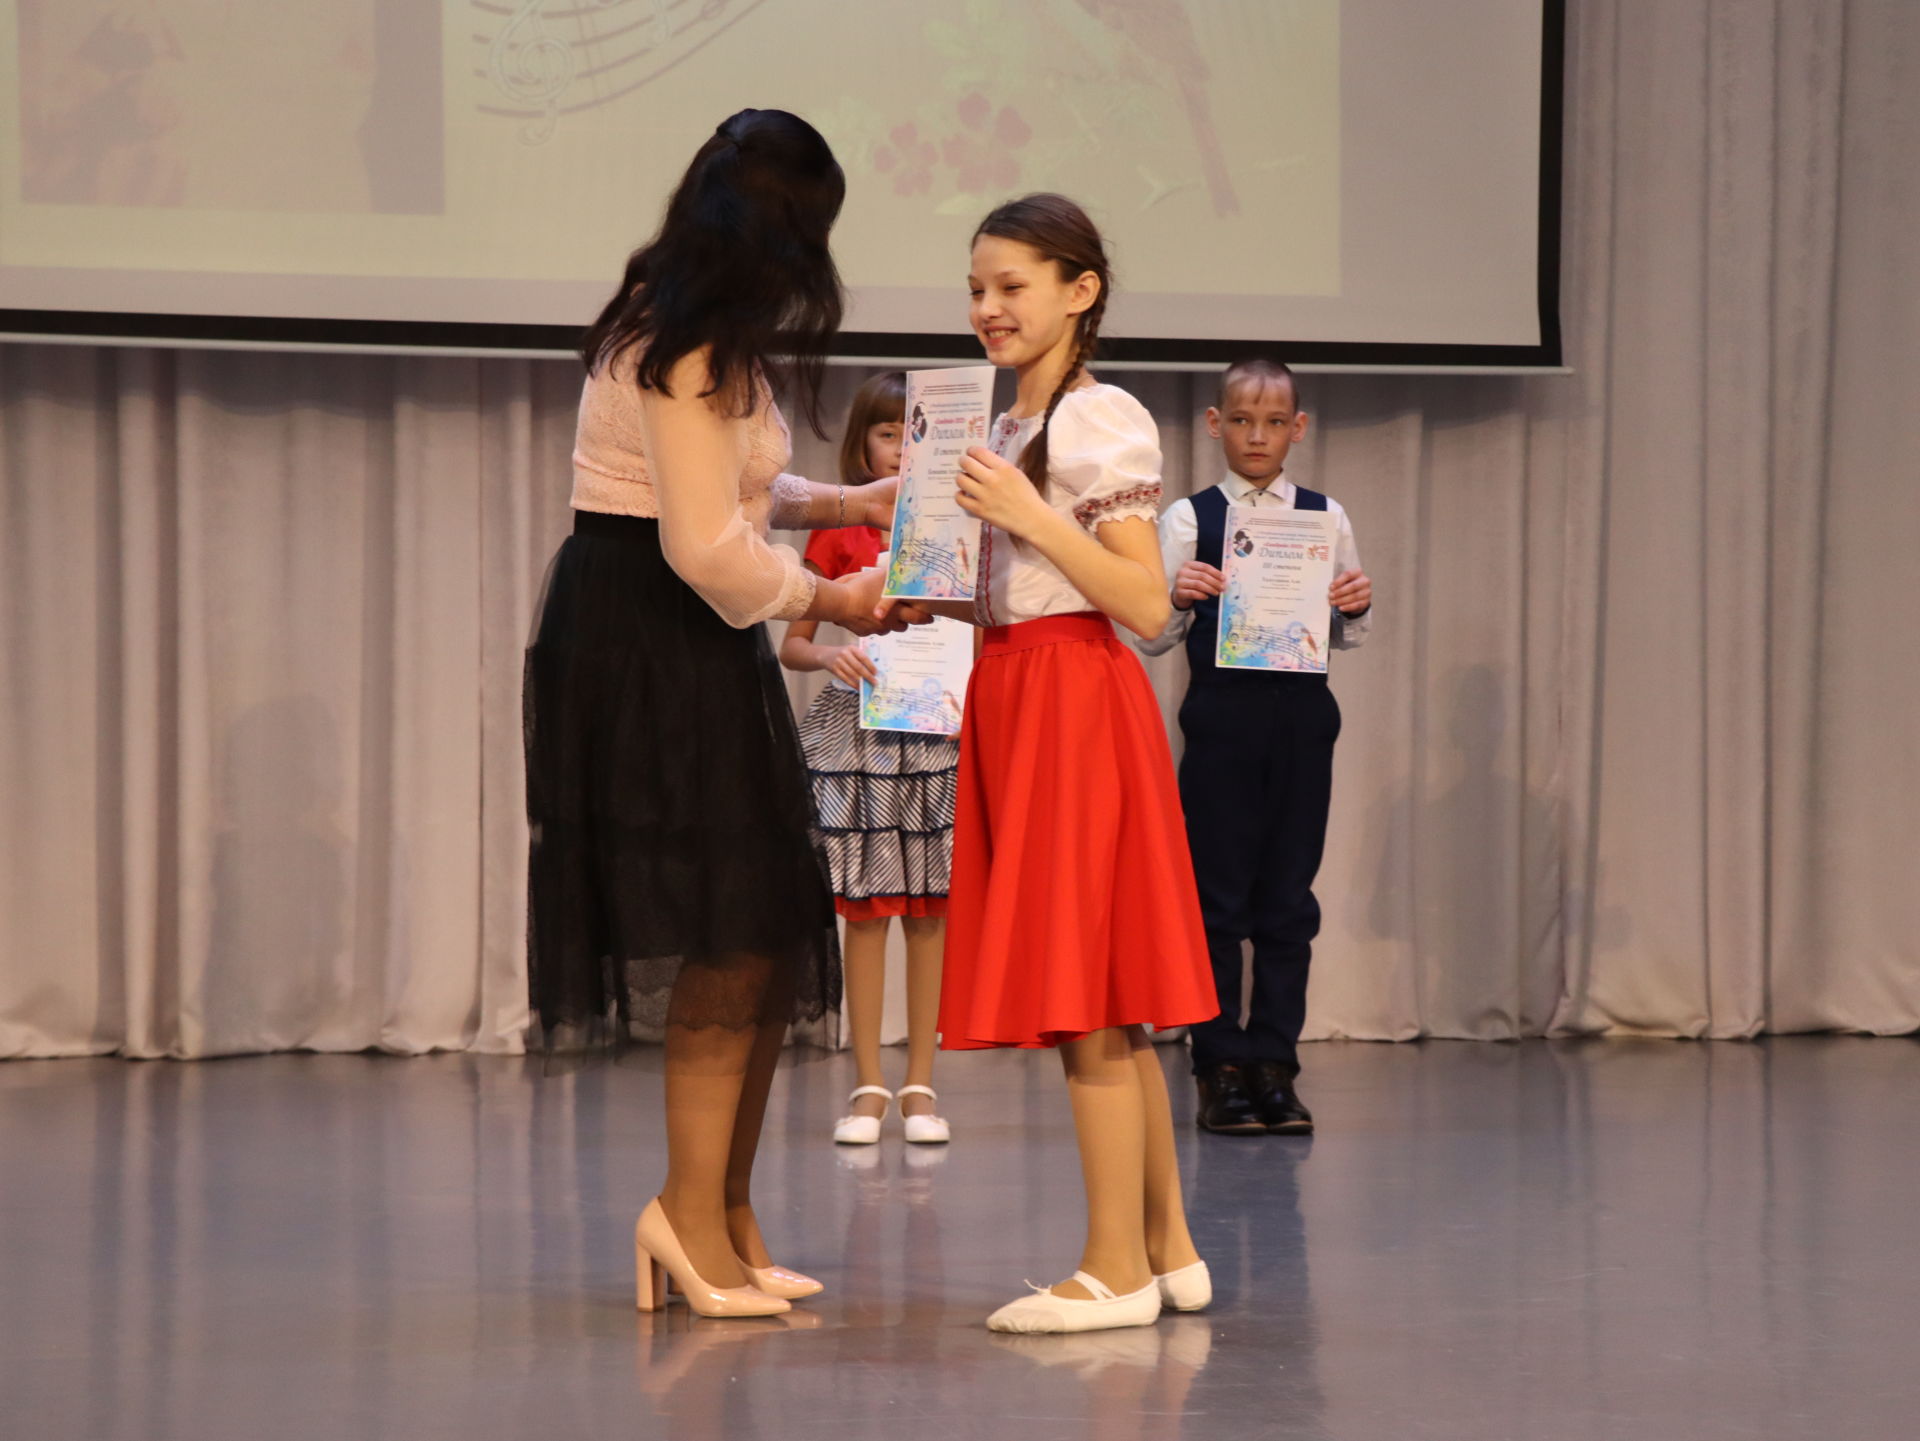 Второй республиканский детско-юношеского вокально-хоровой конкурс «Соловушка-2022» имени Вафиры Гиззатуллиной